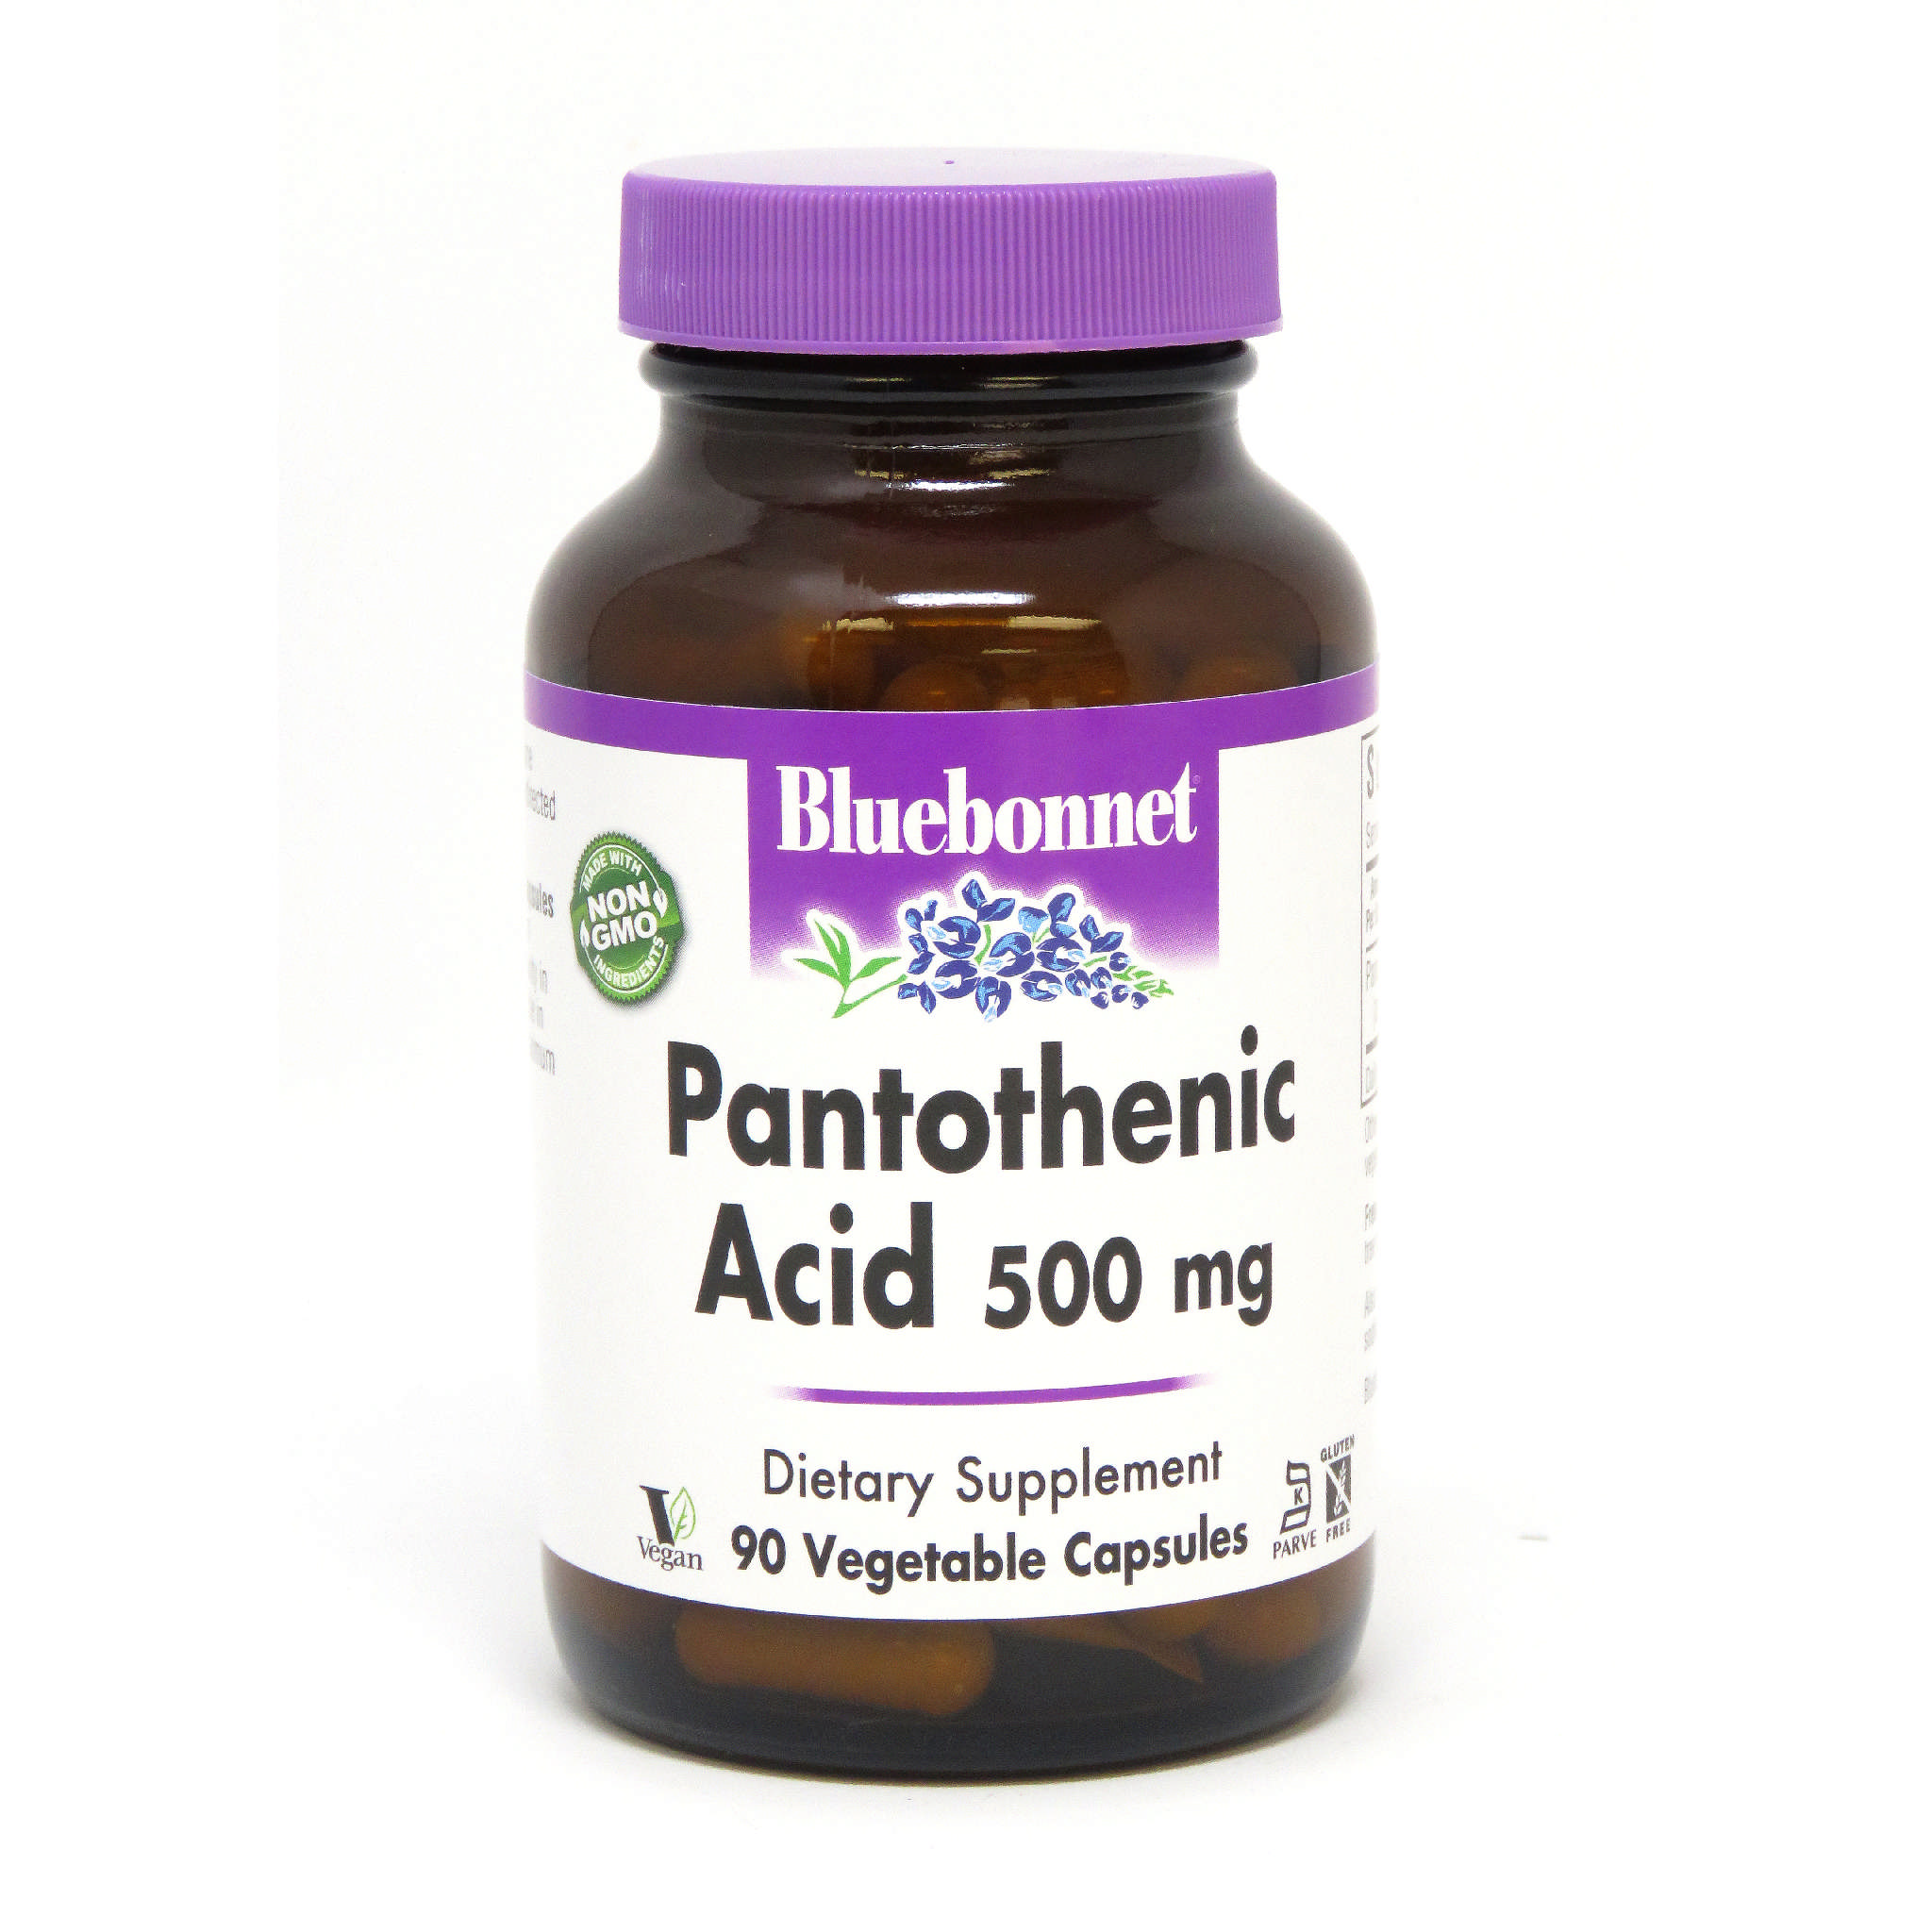 Bluebonnet - Pantothenic Acid 500 mg vCap